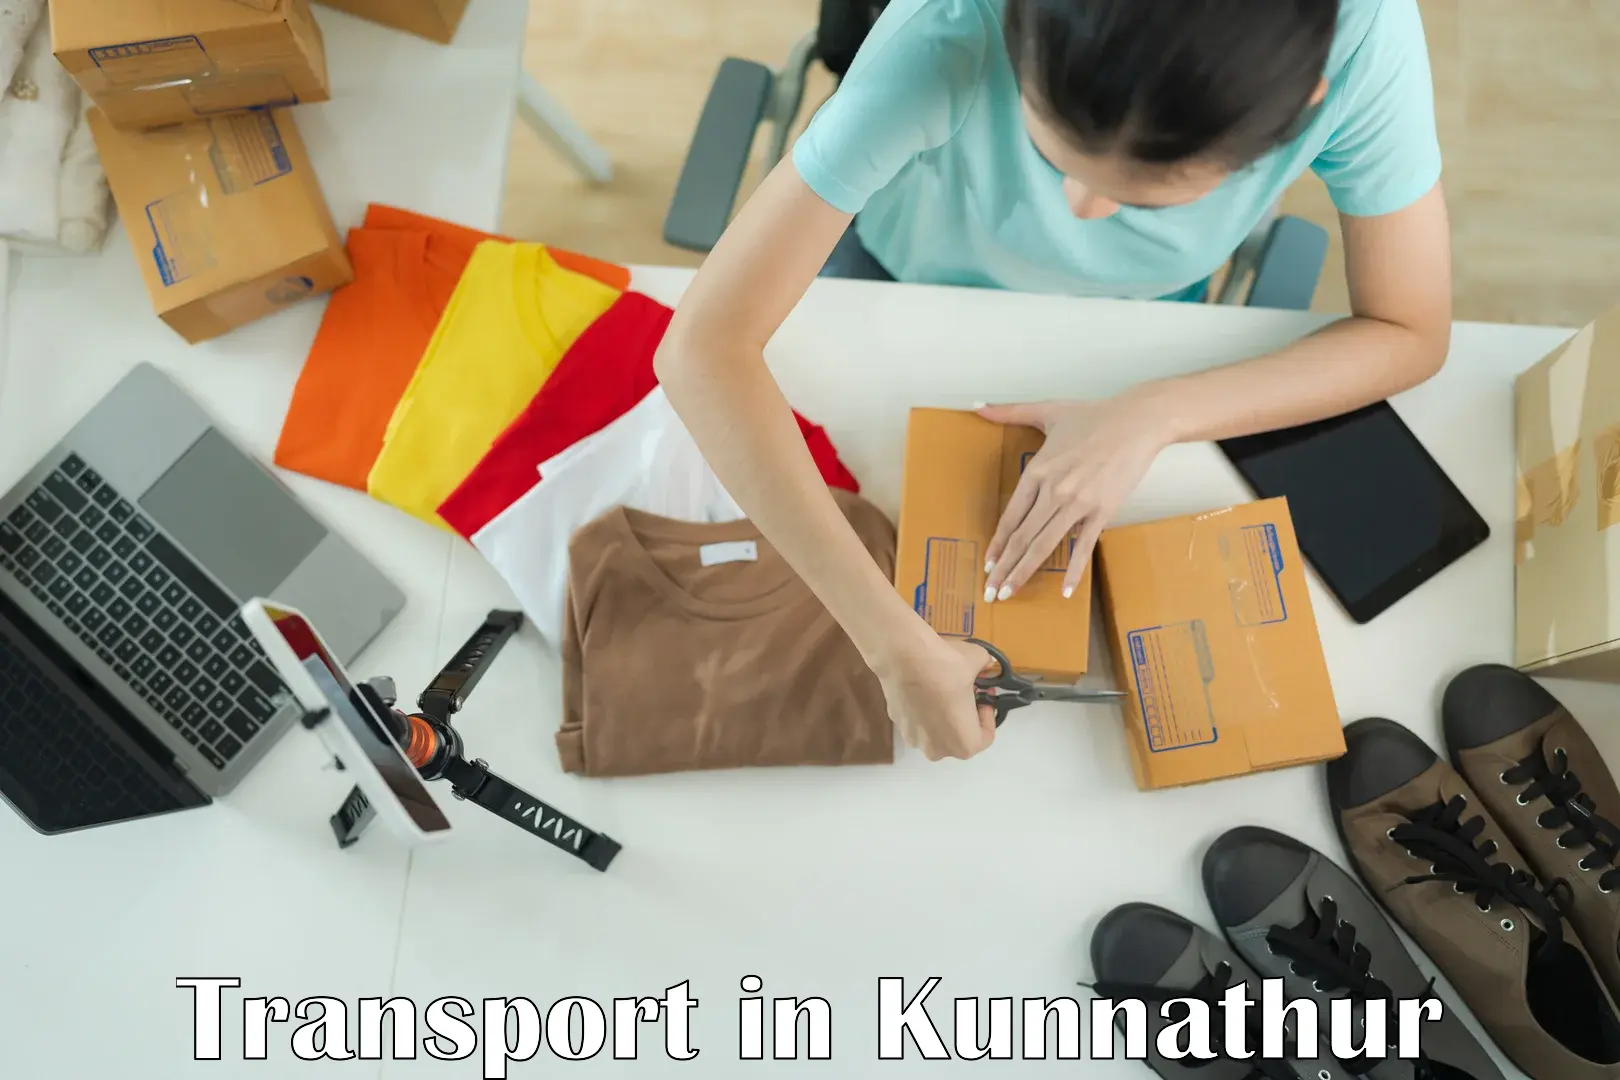 Cargo transportation services in Kunnathur